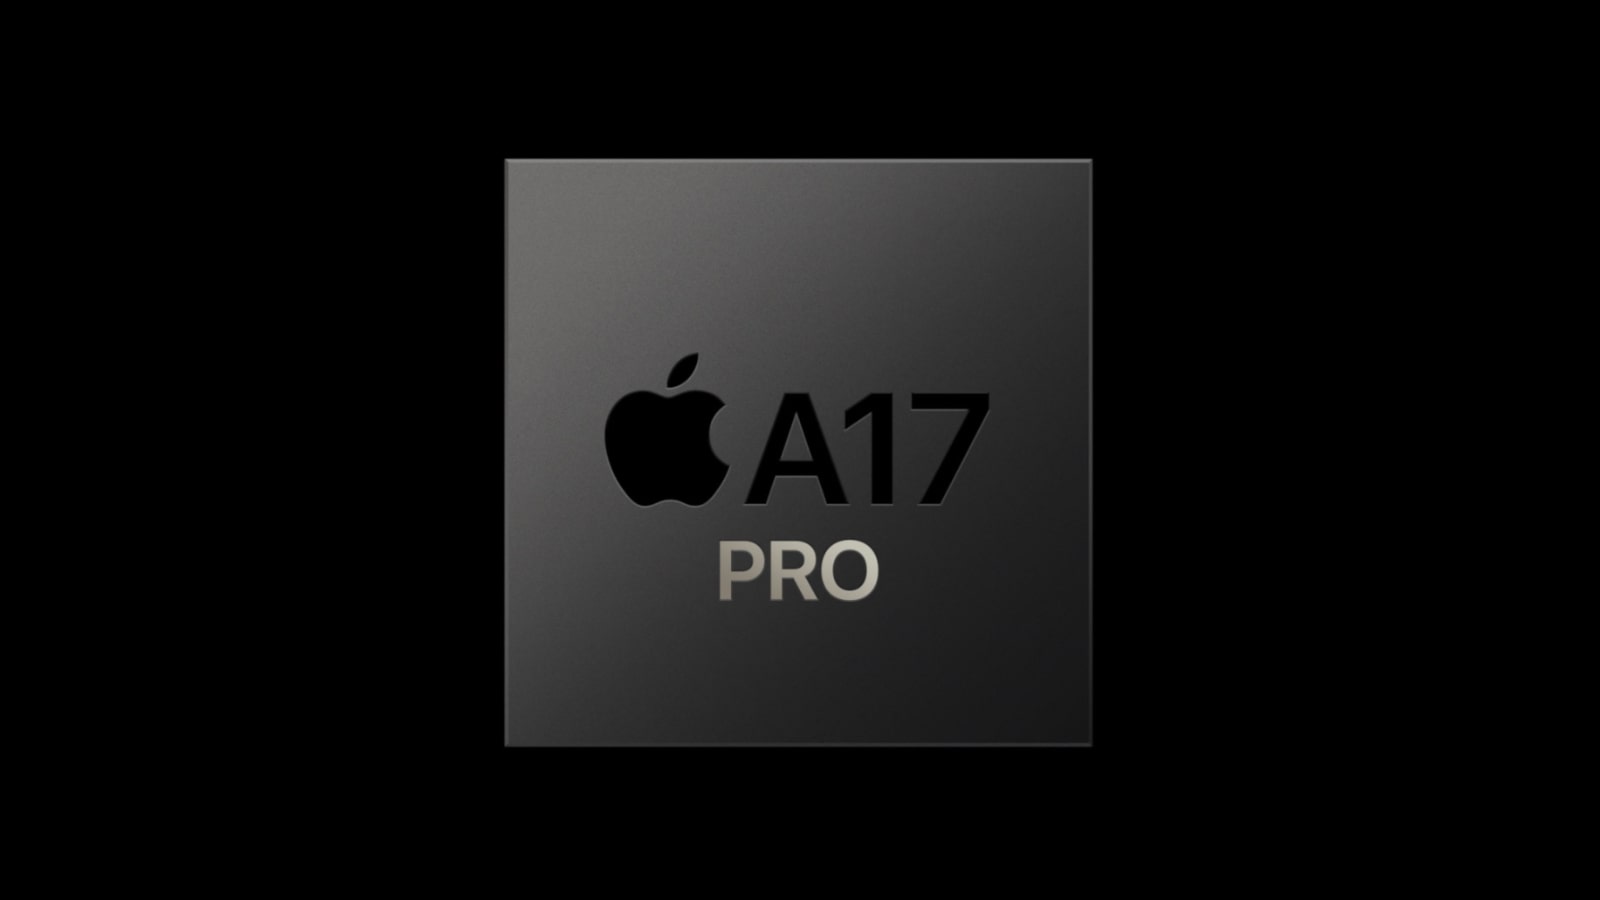 Apple paie un tarif spécial à TSMC pour l'A17 Bionic et la puce M3